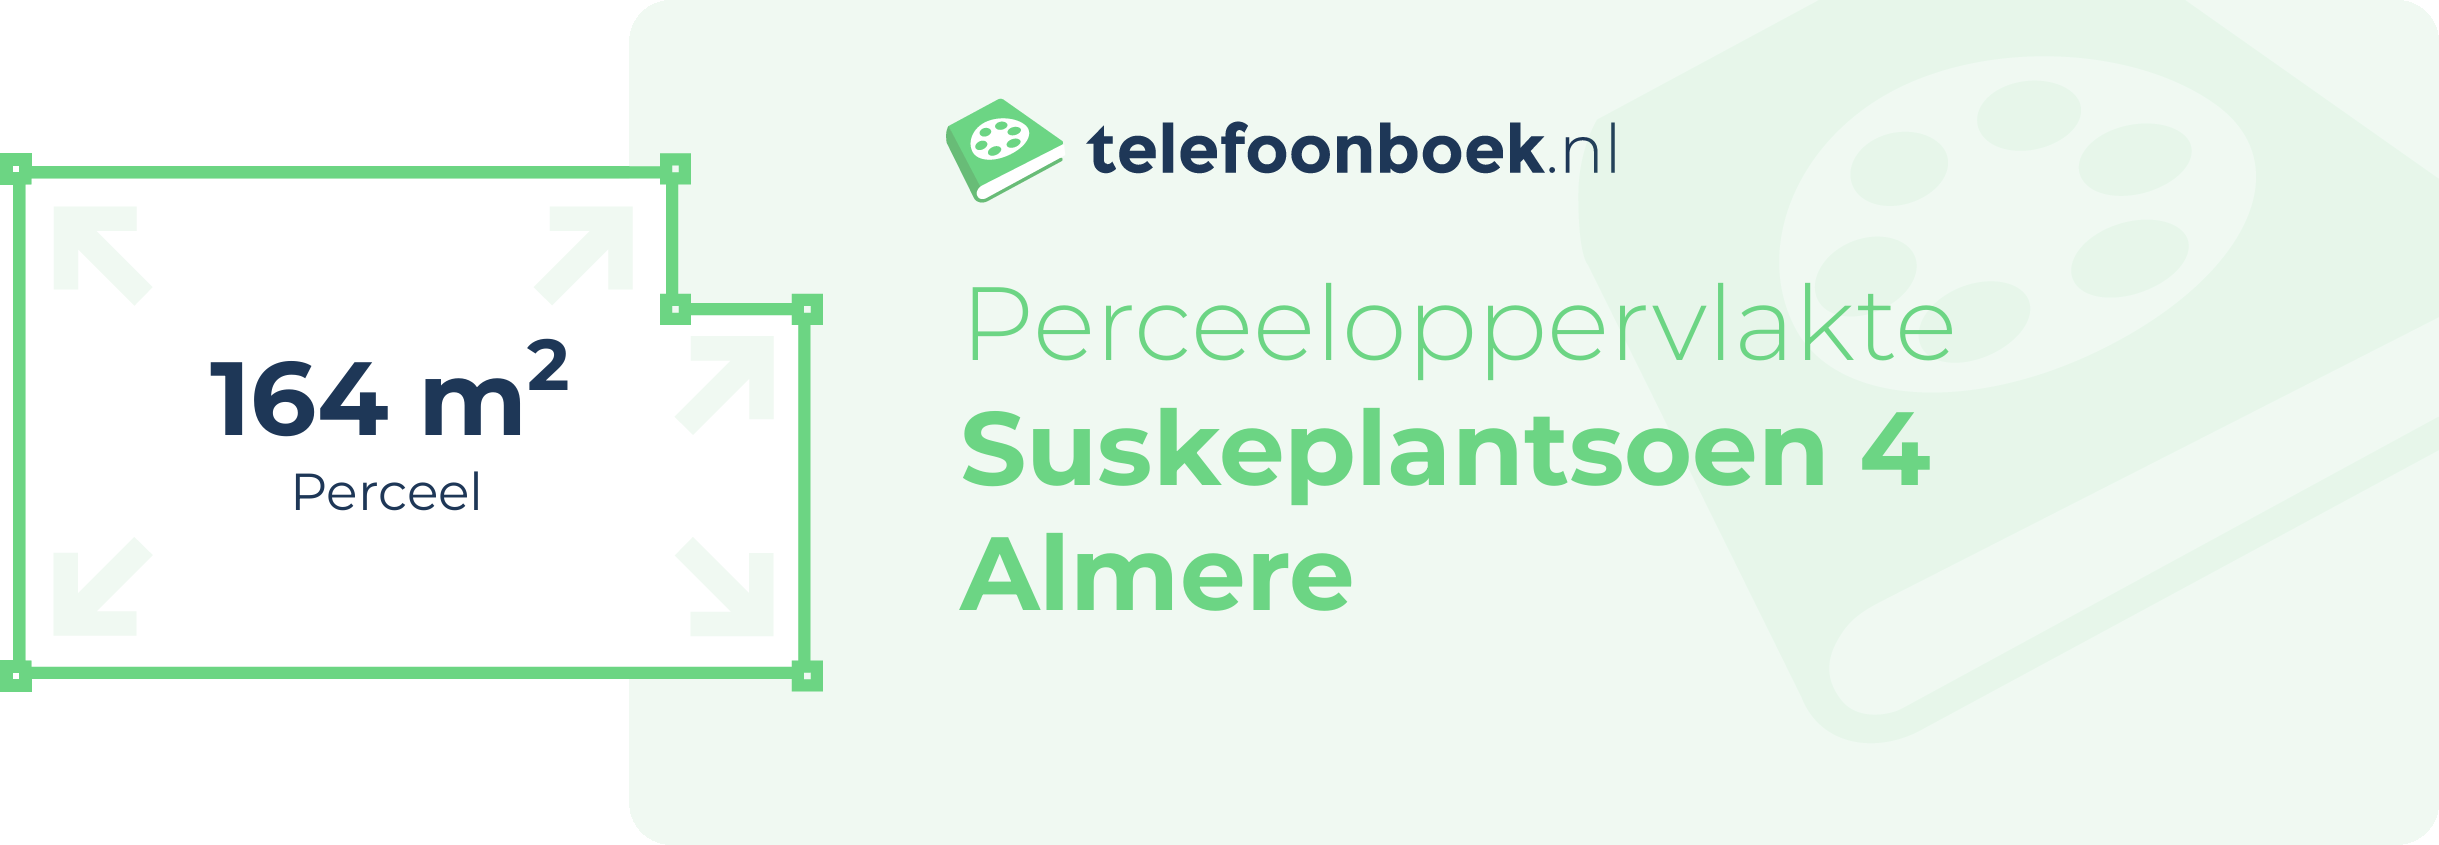 Perceeloppervlakte Suskeplantsoen 4 Almere